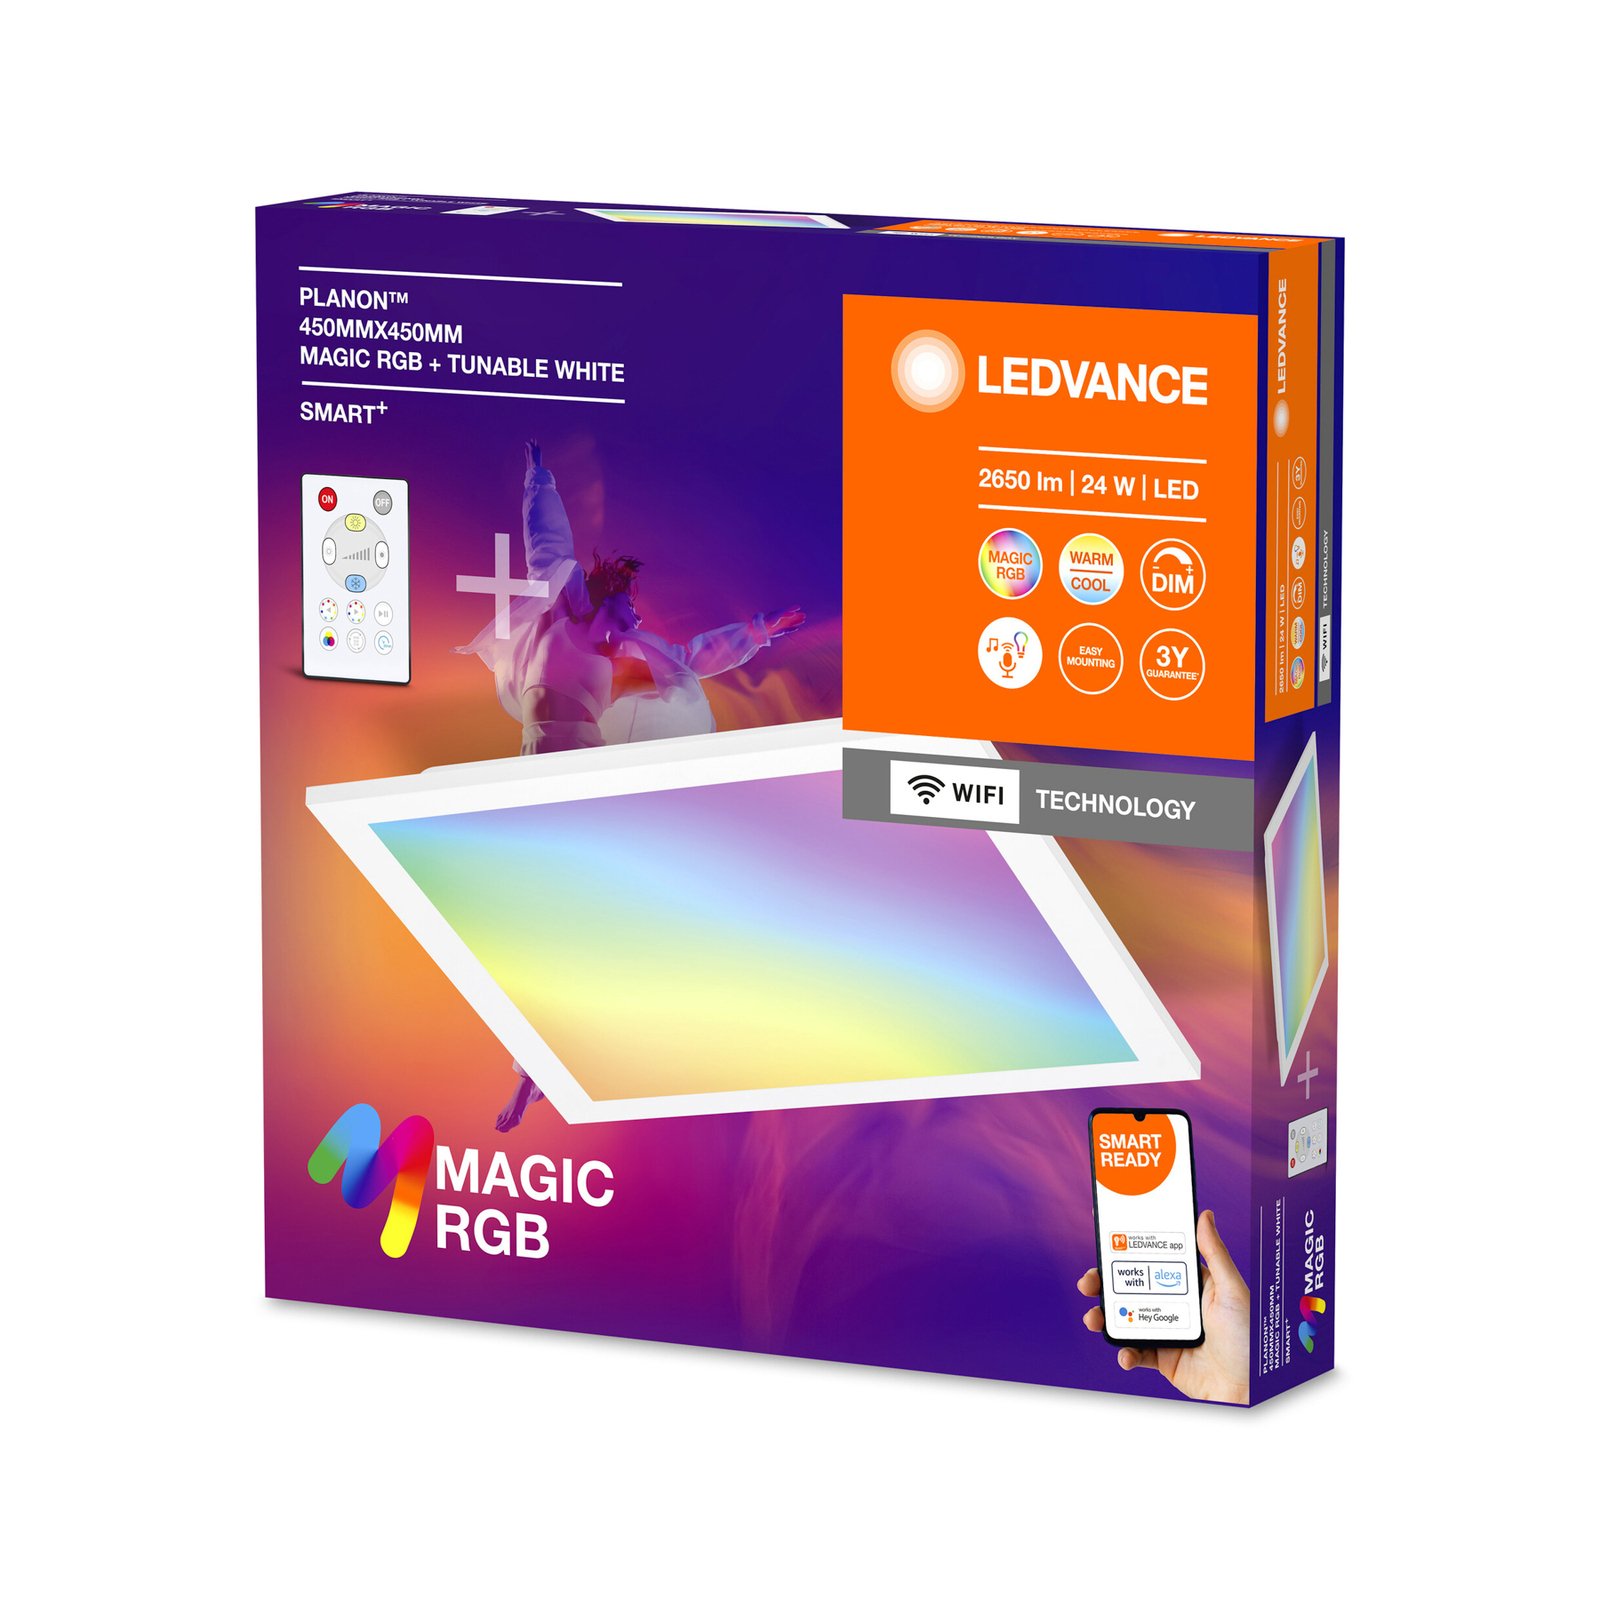 LEDVANCE SMART+ WiFi Planon Magic LED RGBW 45x45cm